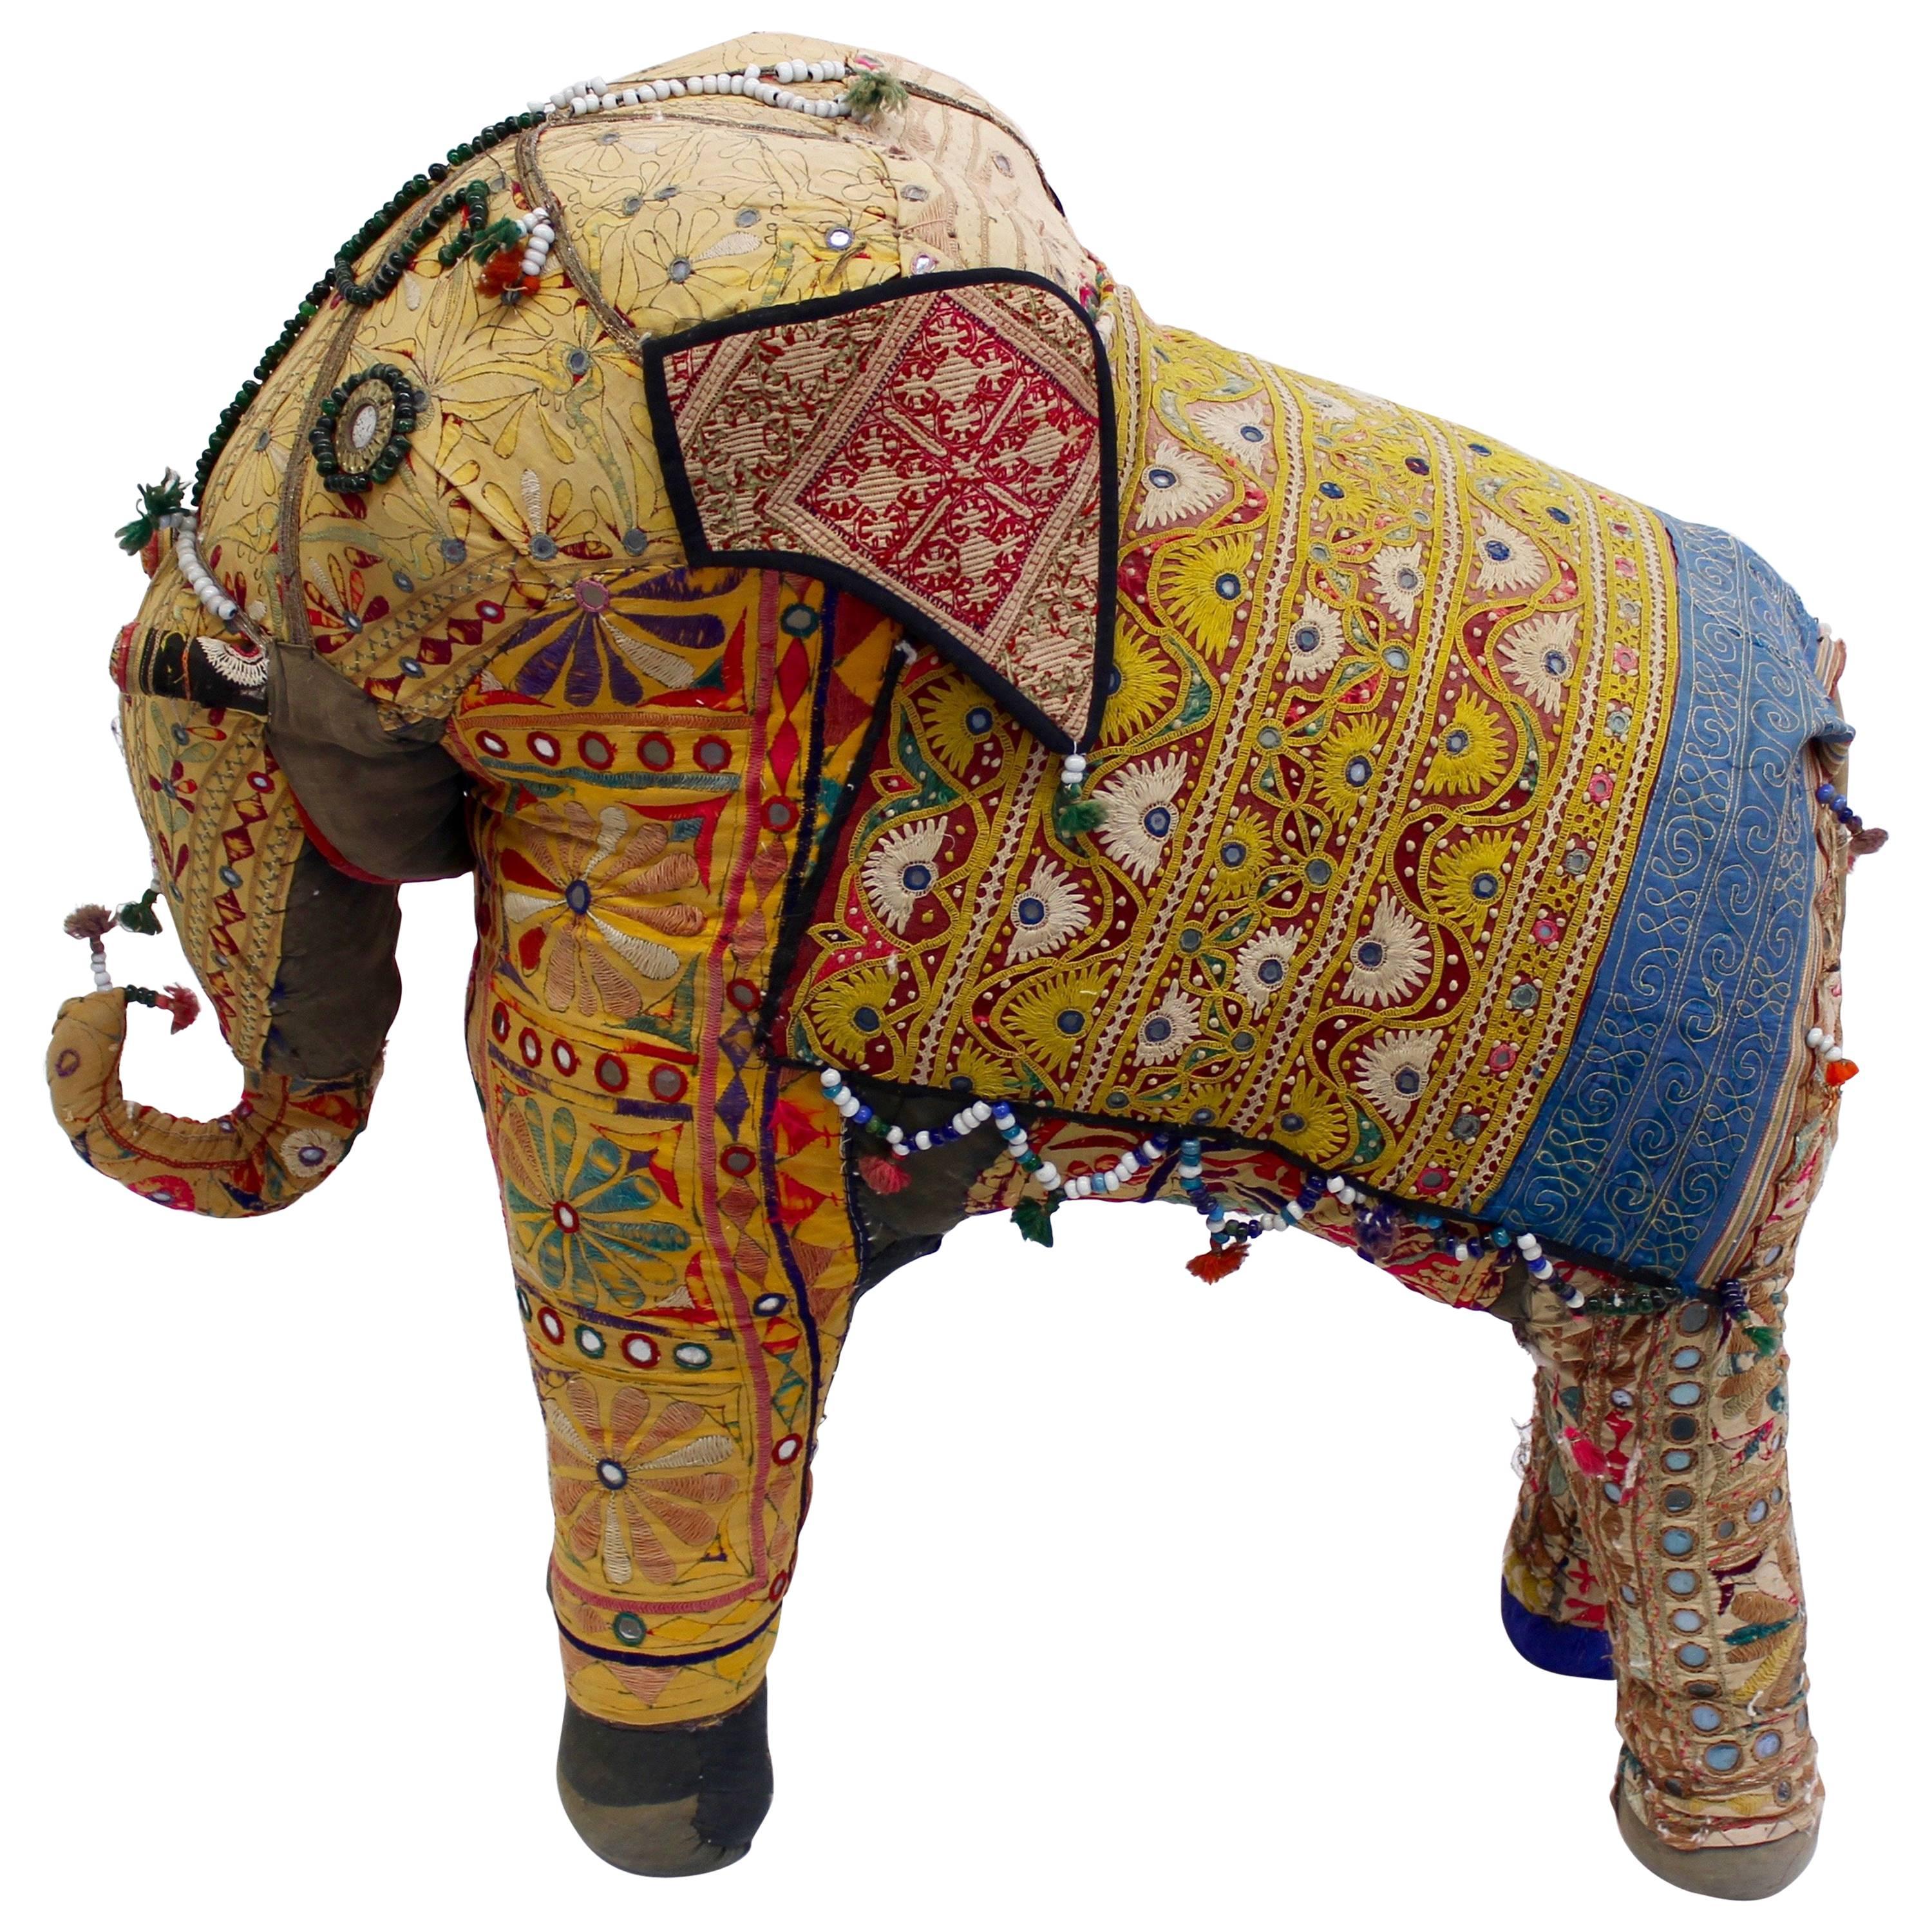 Oversized Vintage Stuffed Indian Elephant